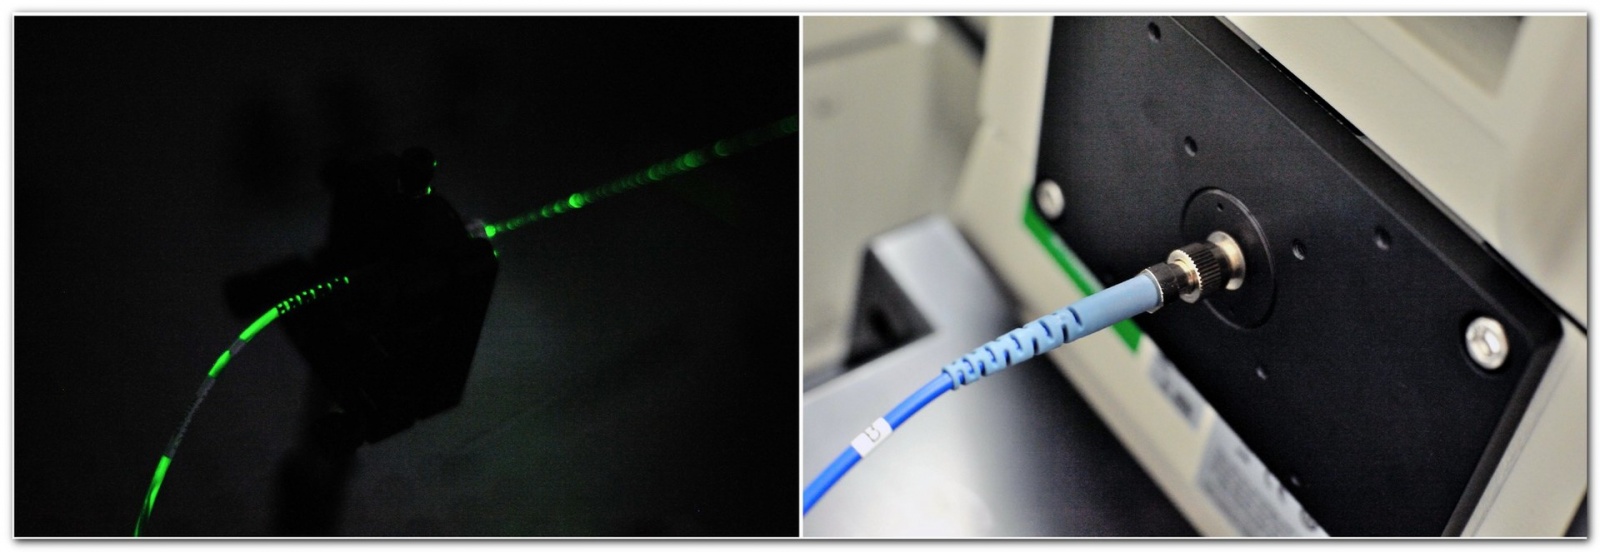 «Диагностировать рак поможет лазер», или Как устроен лазерный флуоресцентный гиперспектральный микроскоп - 15